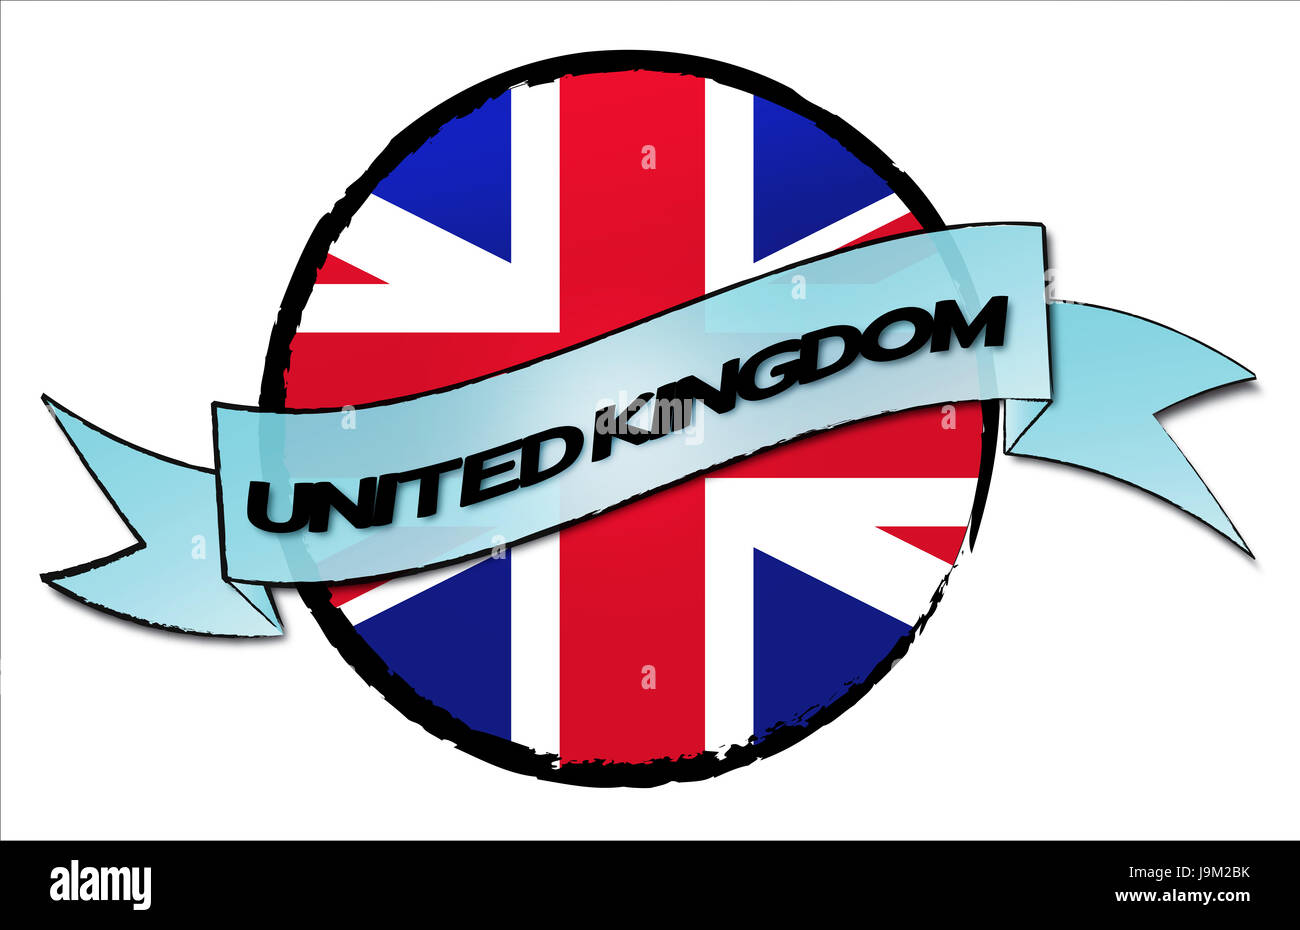 Londra, Inghilterra, Regno, unito a Londra, Inghilterra, bandiera, viaggio, pulsante Foto Stock